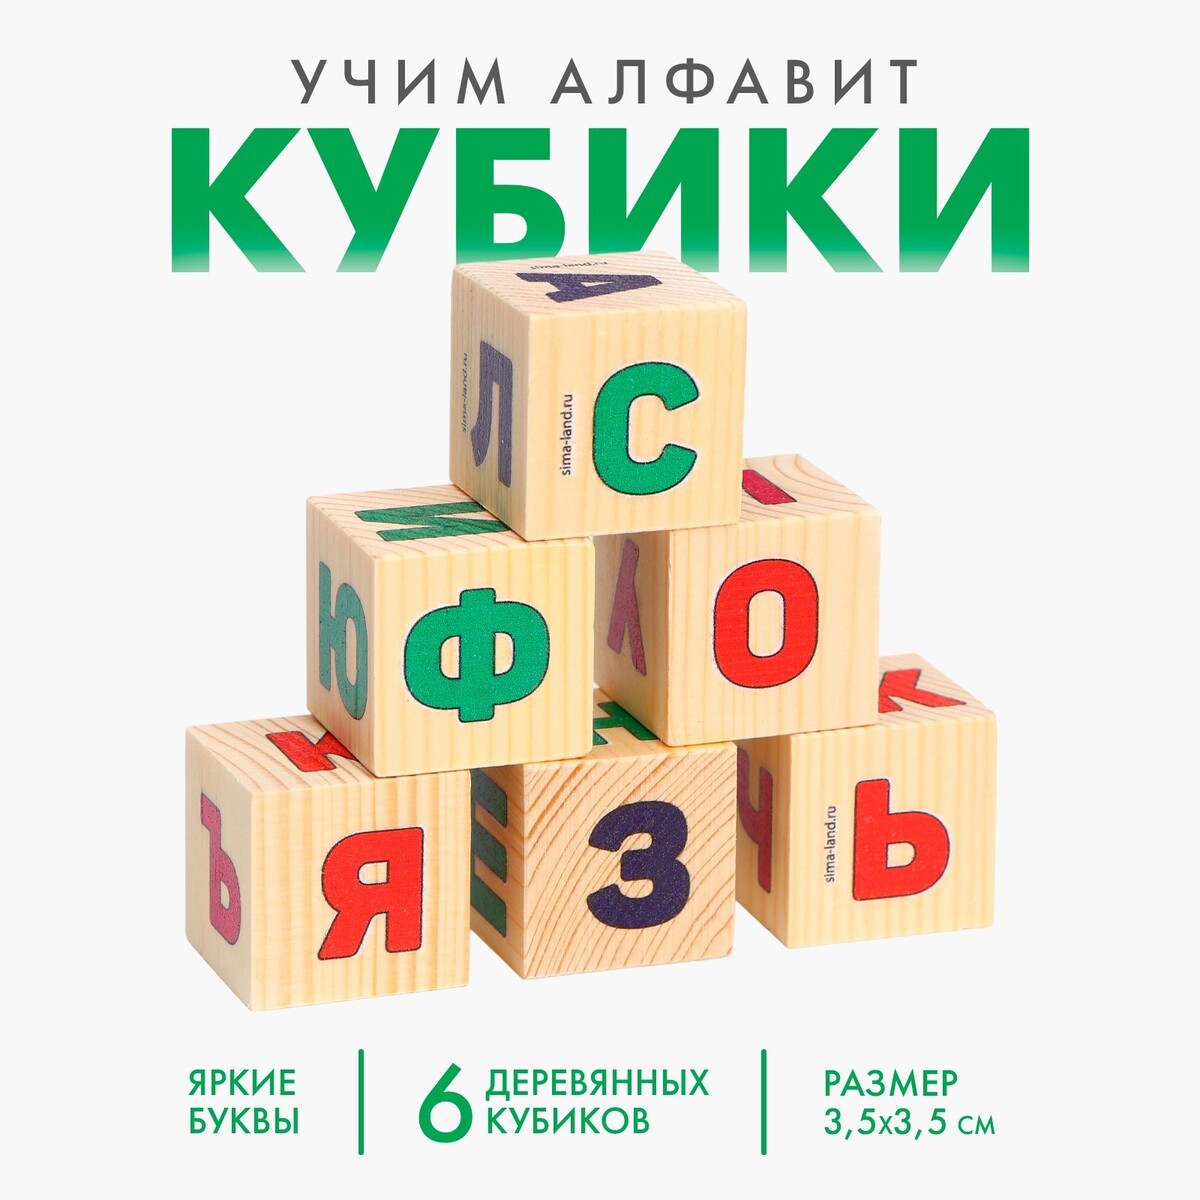 Кубики из натурального дерева кубики занимательные буквы 42 штуки арт 1111 5